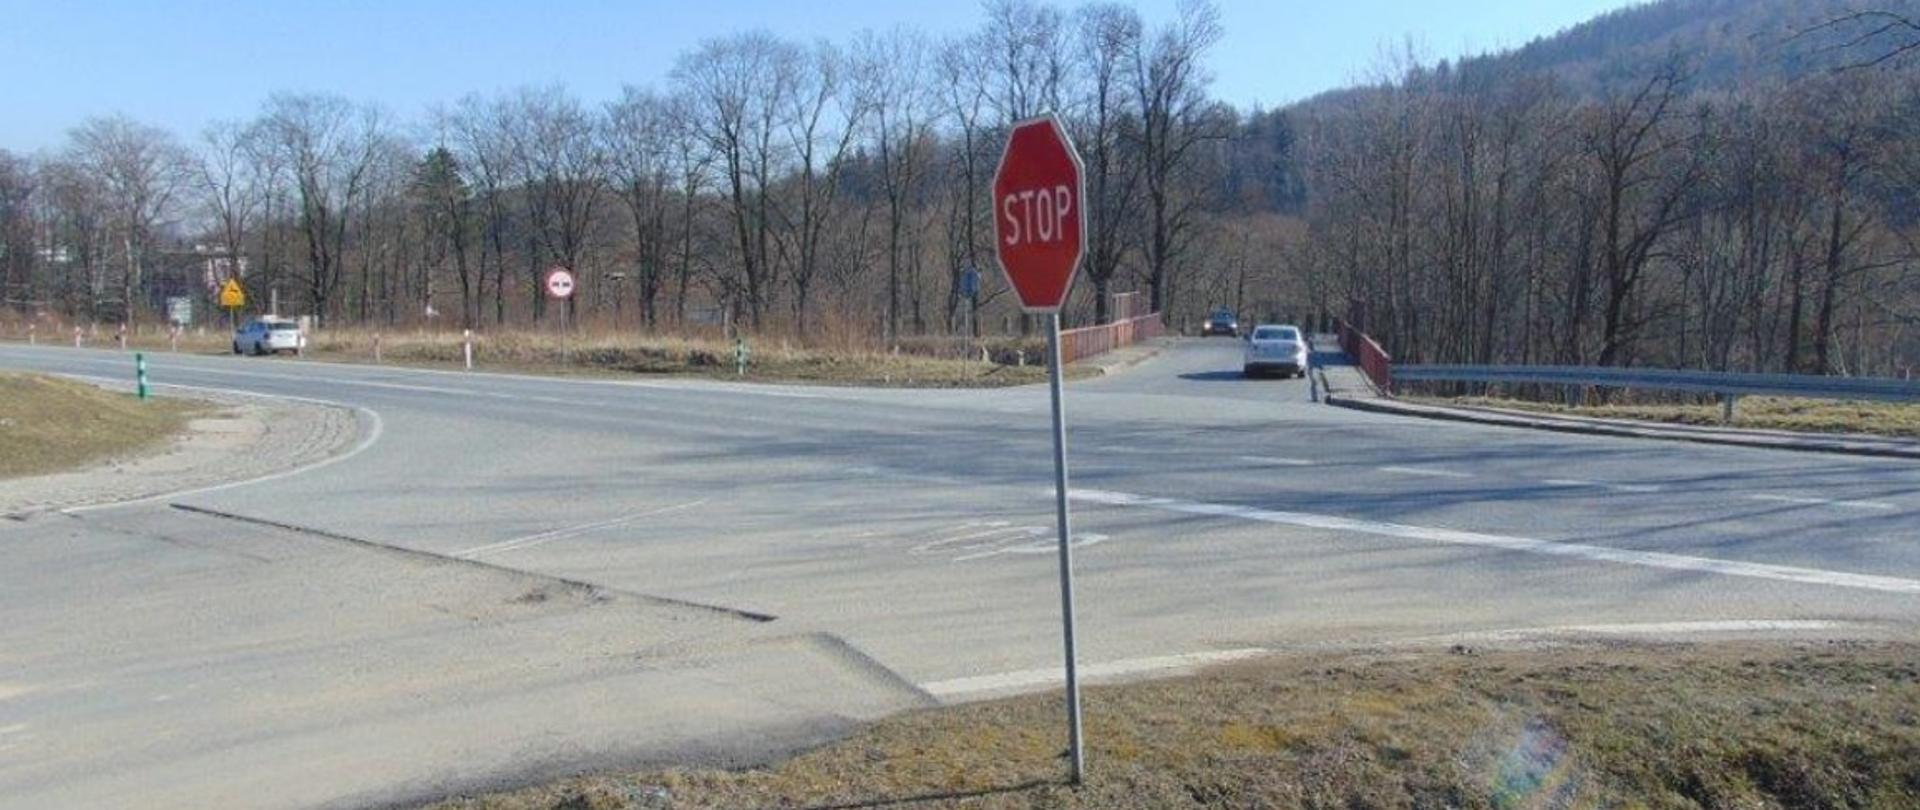 na zdjęciu widoczne skrzyżowanie, w tle pojazdy i znak STOP